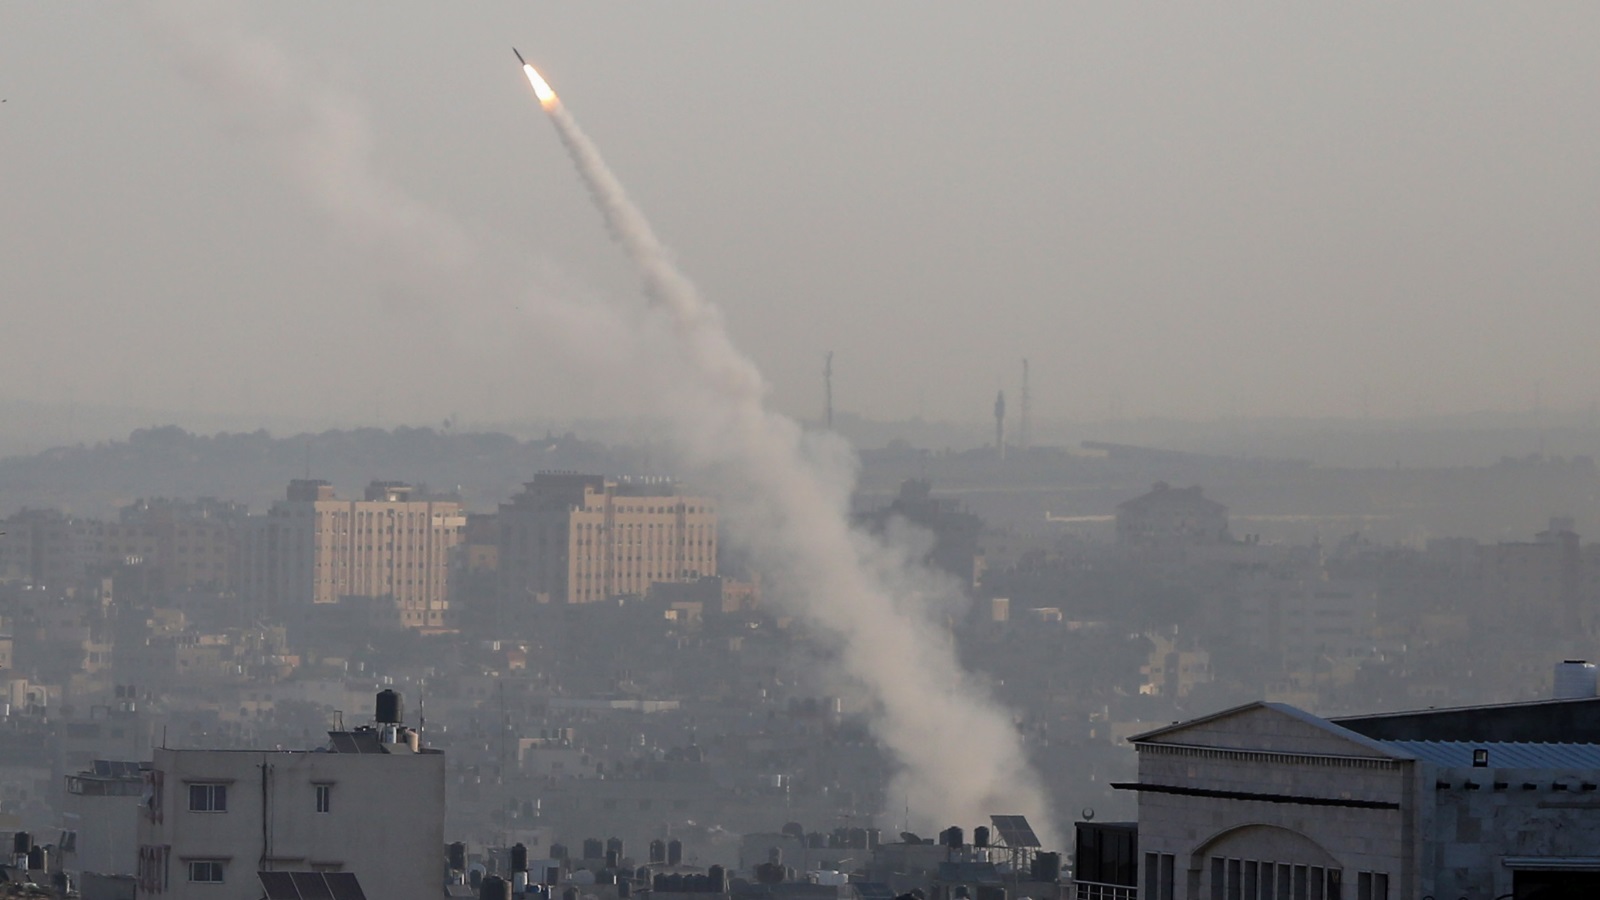 ‪المقاومة ردت على الاعتداءات الإسرائيلية بإطلاق صواريخ‬ (الأناضول)